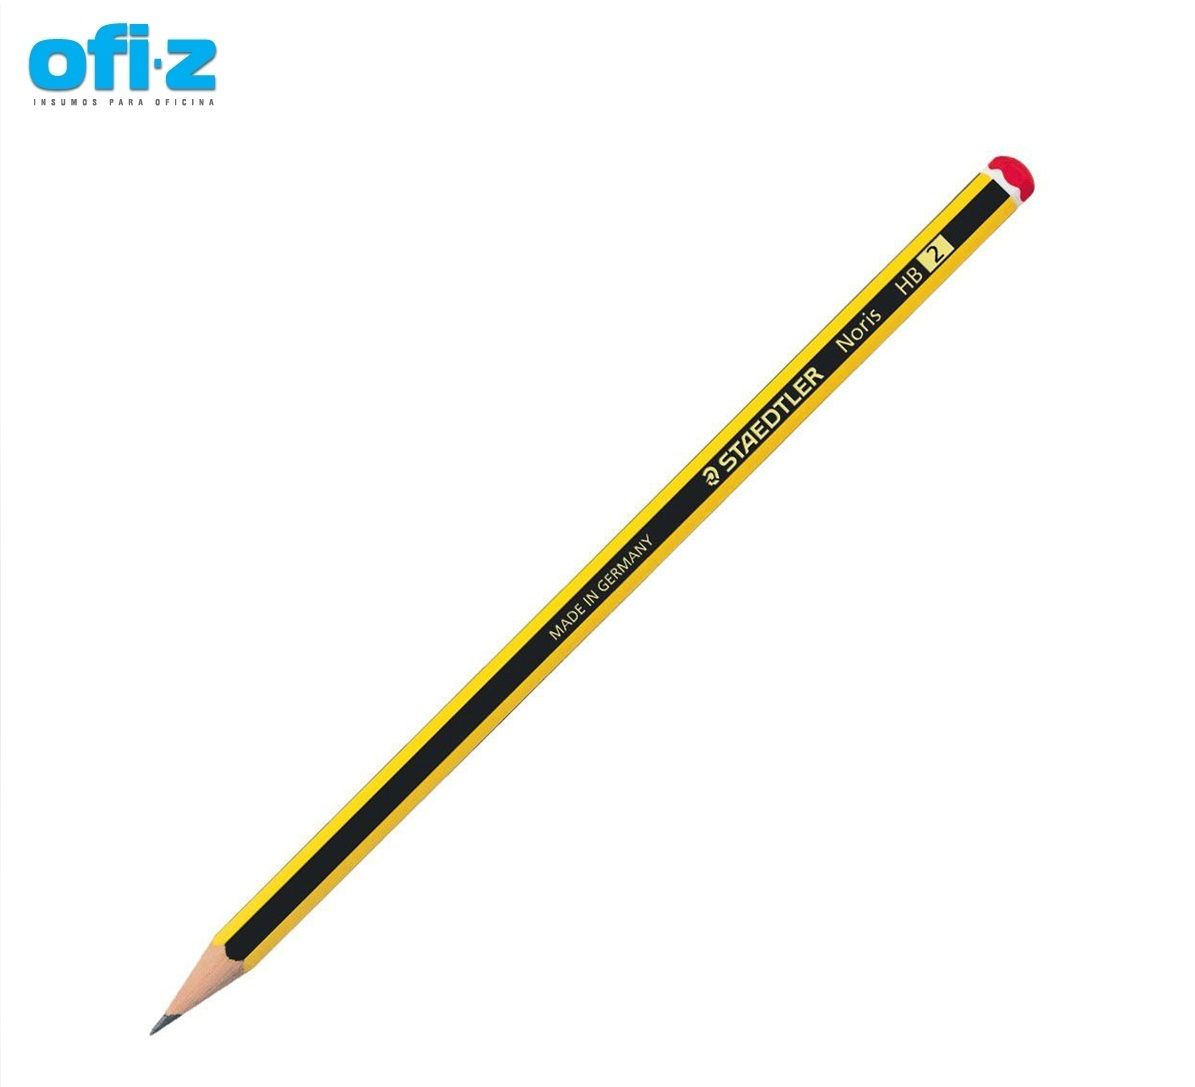 Blíster 4 lápices Staedtler nº2 + goma + afilalápiz - Material escolar,  oficina y nuevas tecnologias